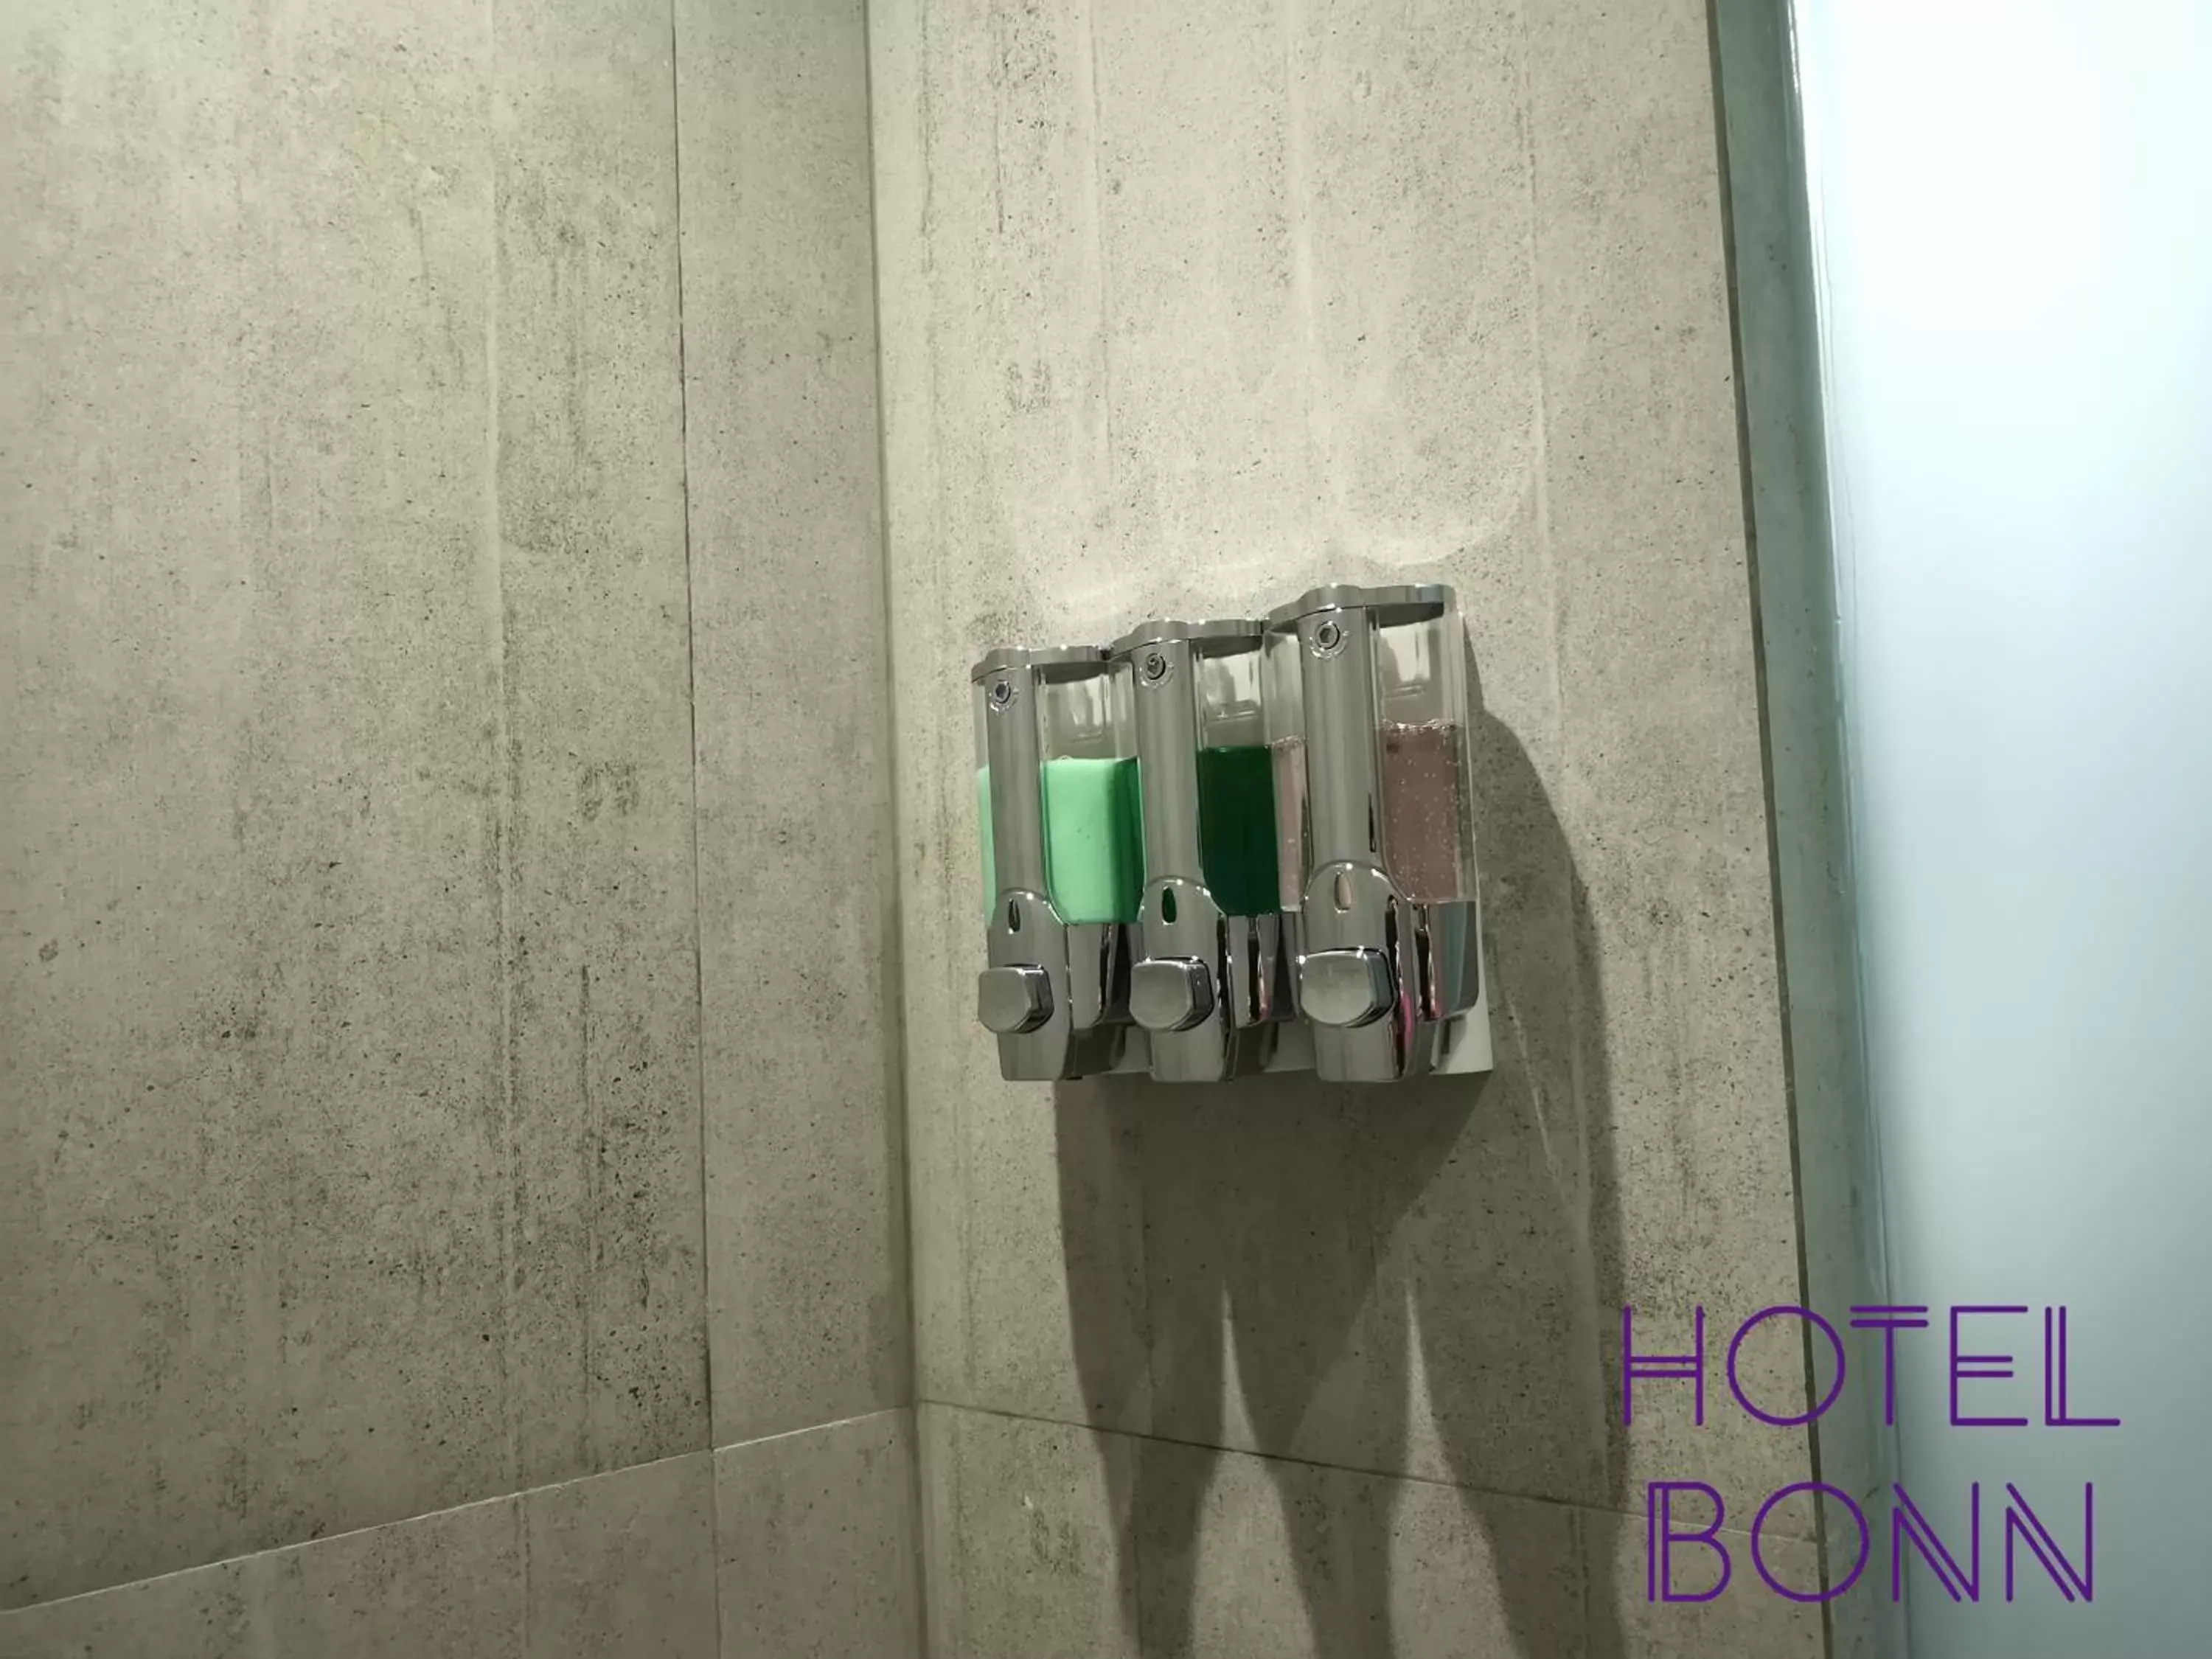 Bathroom in Hotel Bonn